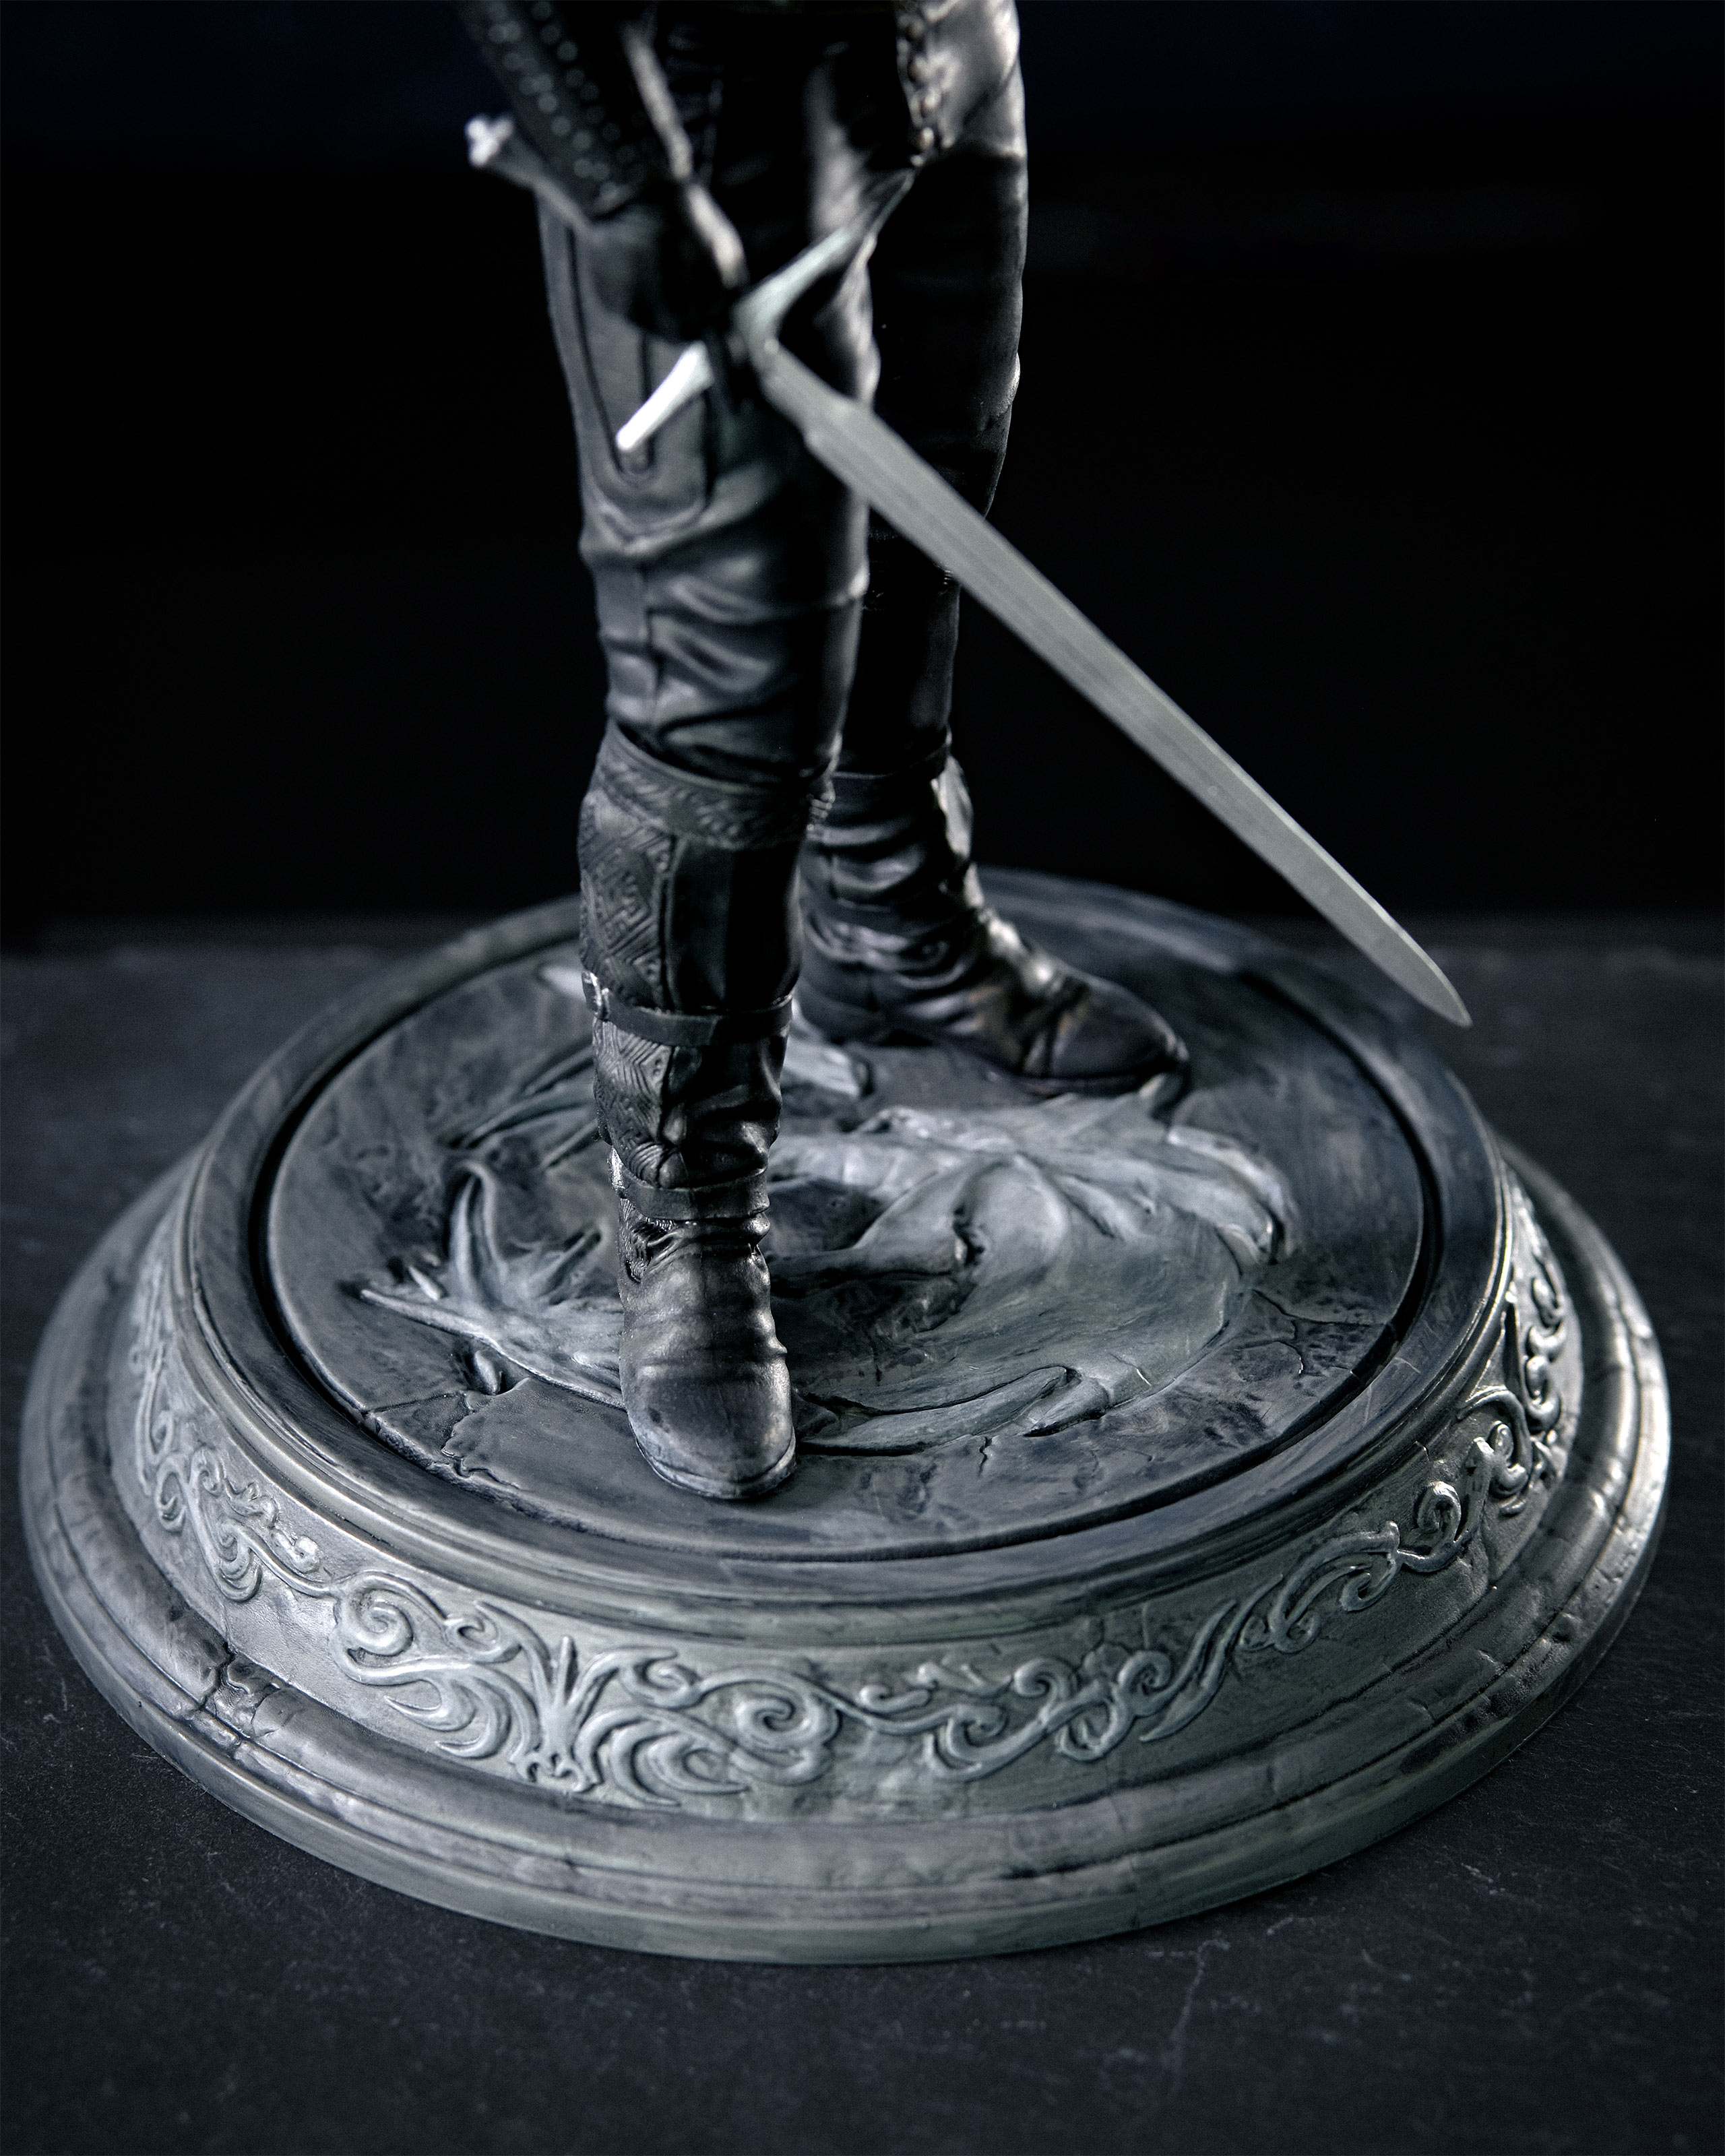 Witcher - Getransformeerde Geralt Standbeeld